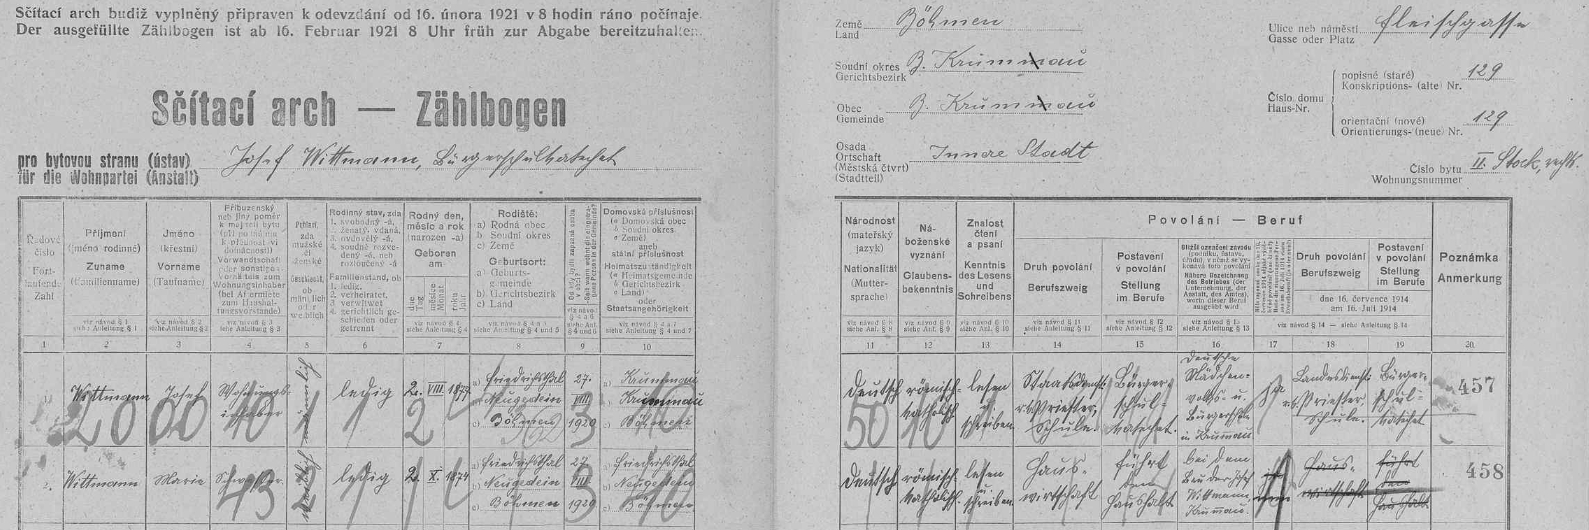 Arch sčítání lidu z roku 1921 pro dům v českokrumlovské Masné ulici (Fleischgasse) čp. 129, kde bydlil se svou sestrou Marií (*2. října 1874 v někdejším Friedrichsthalu jako on) od 27. srpna 1920